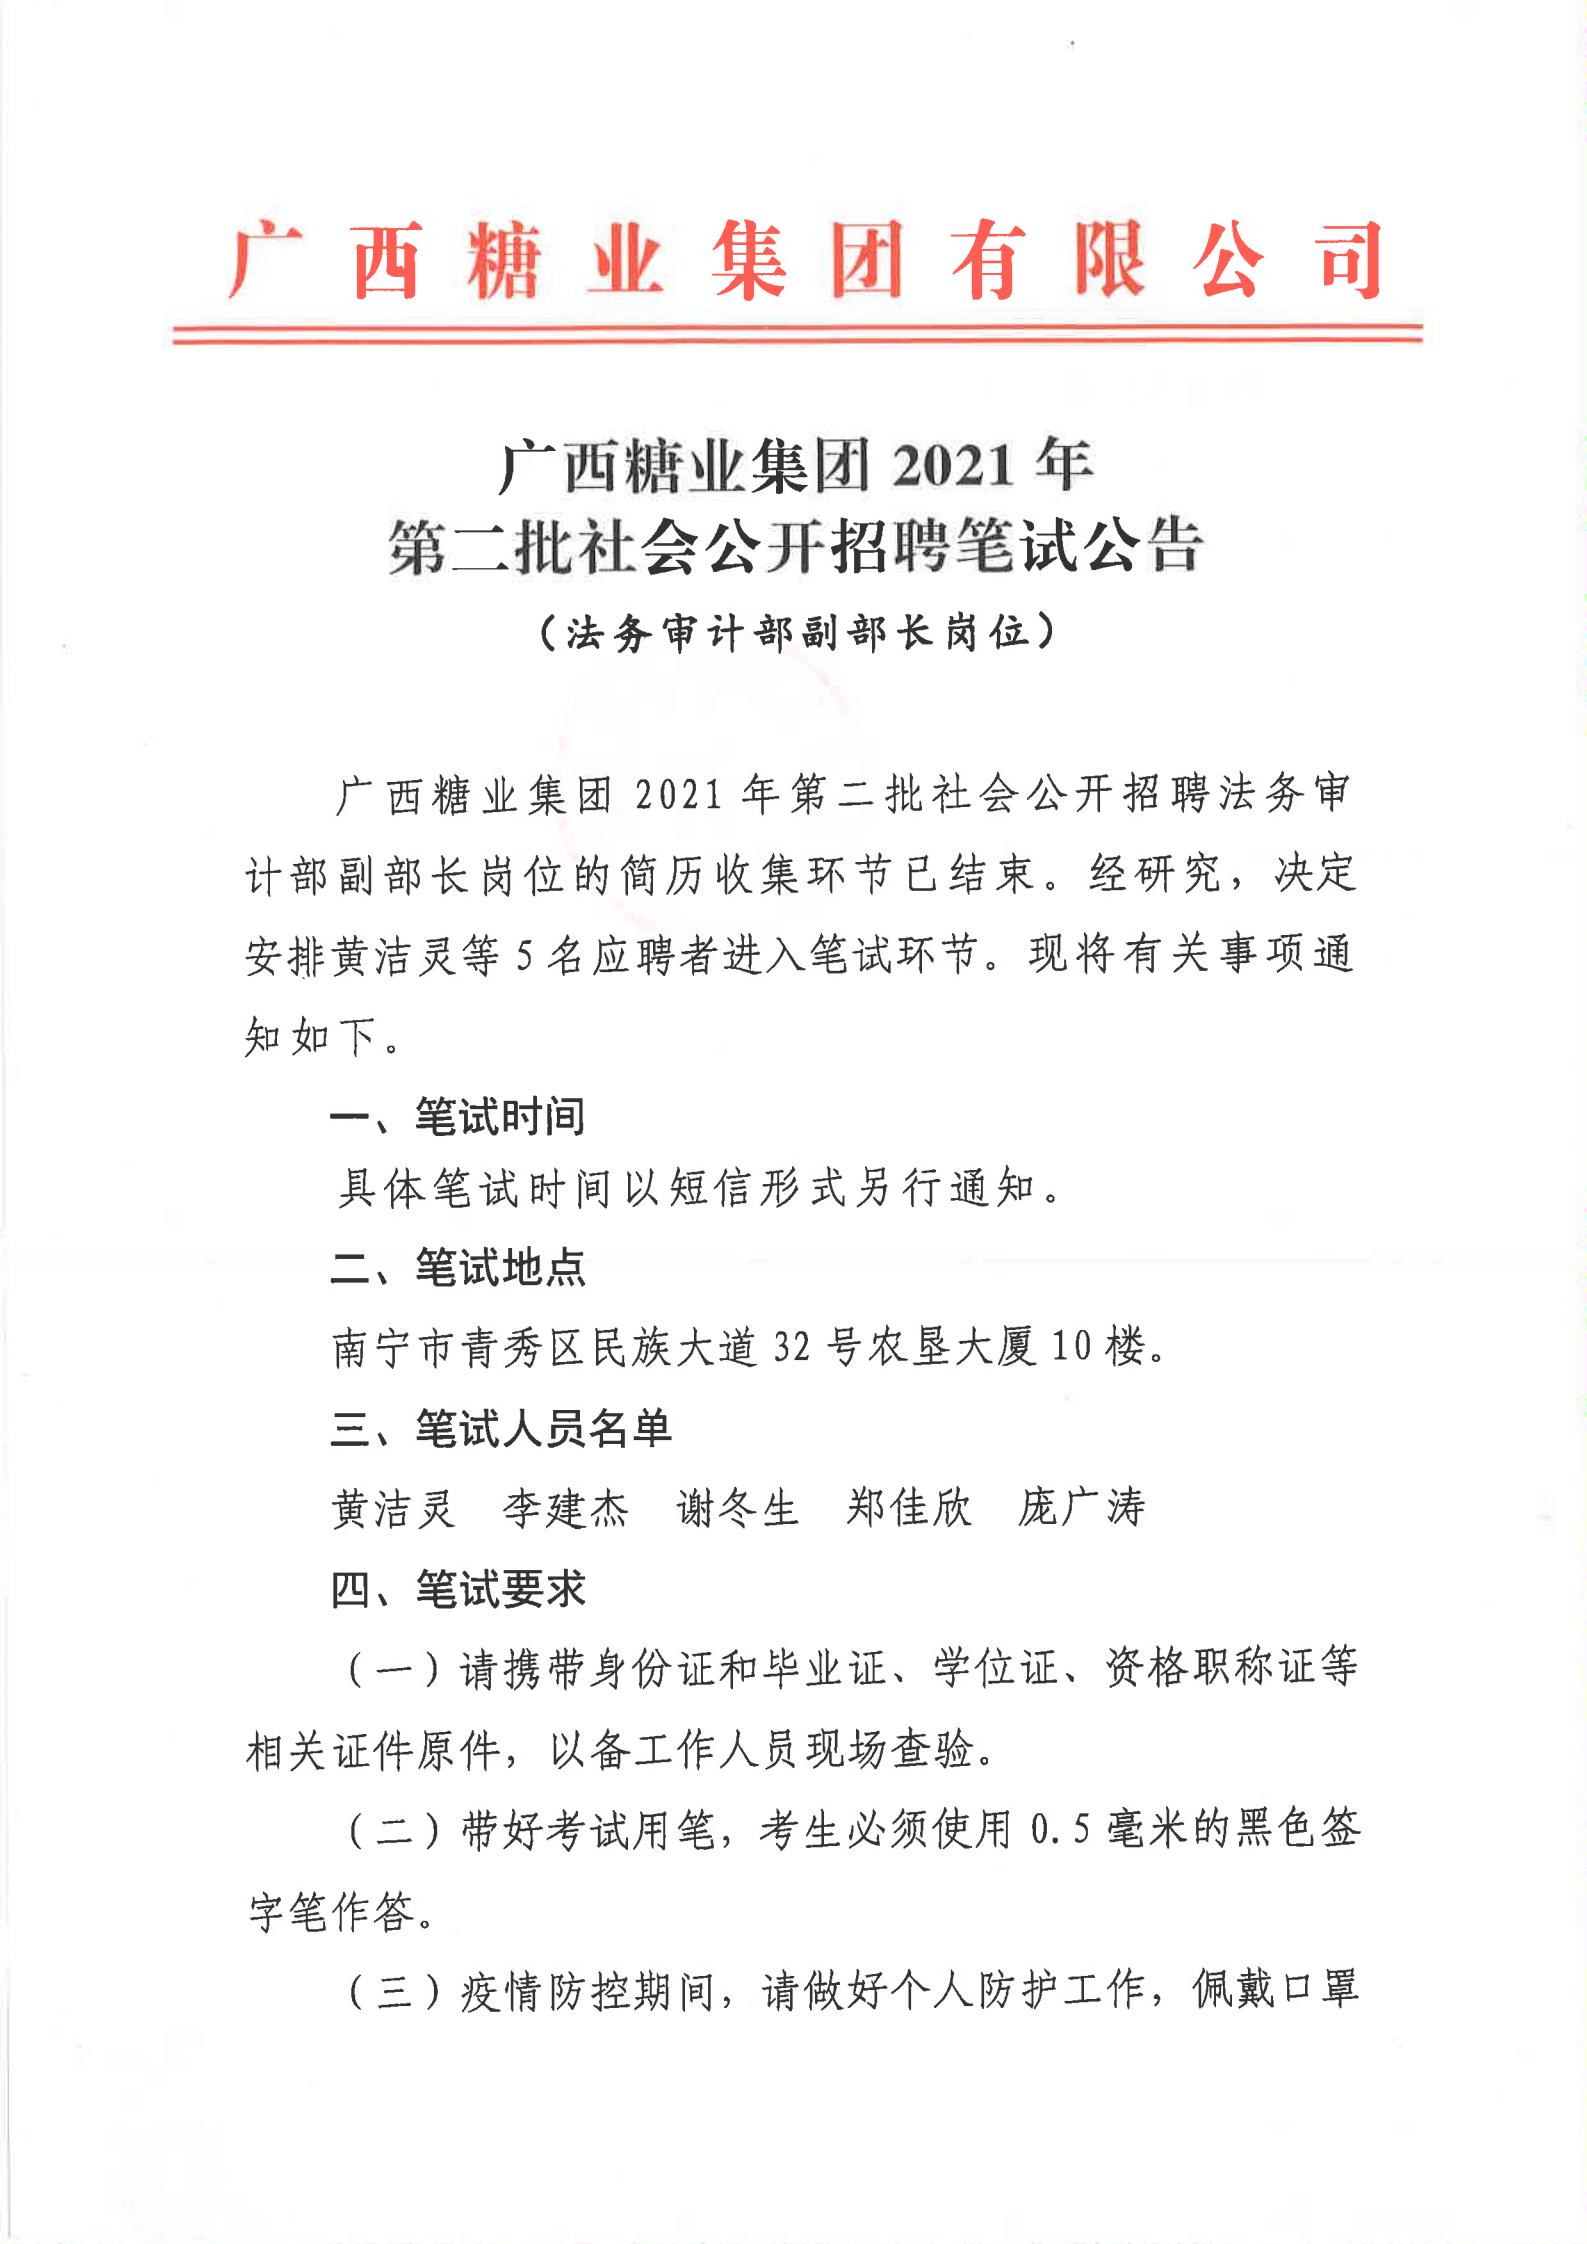 广西糖业集团2021年第二批社会公开招聘有关岗位笔试公告（法务审计部副部长）_00.jpg